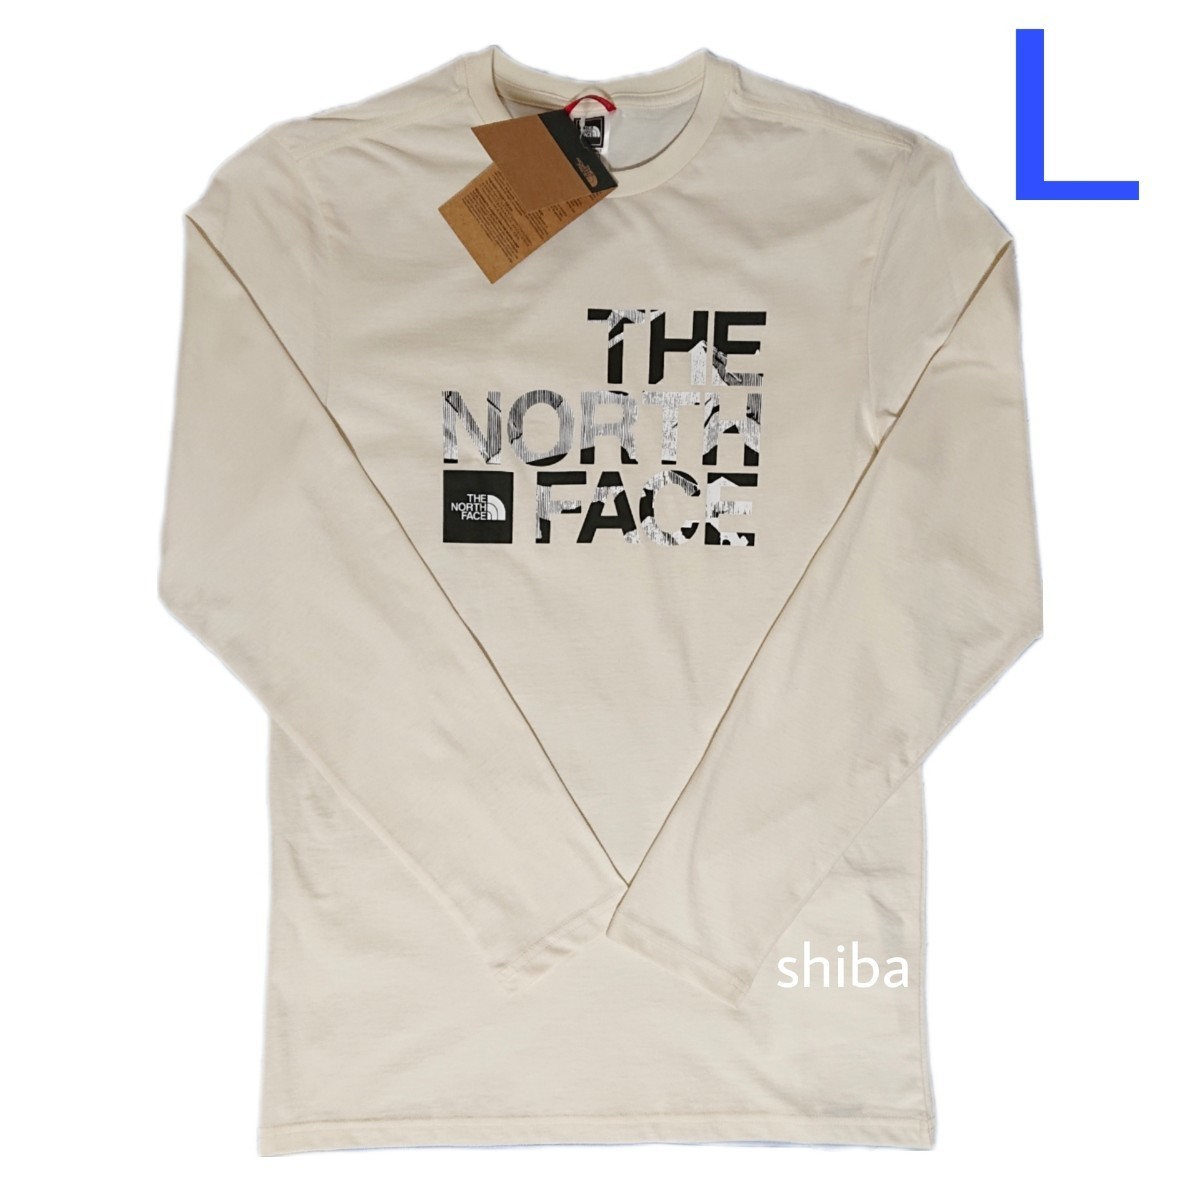 THE NORTH FACE ノースフェイス 長袖 ロンT ロング tシャツ コーディネート ベージュ オフホワイト 白 海外Lサイズの画像1